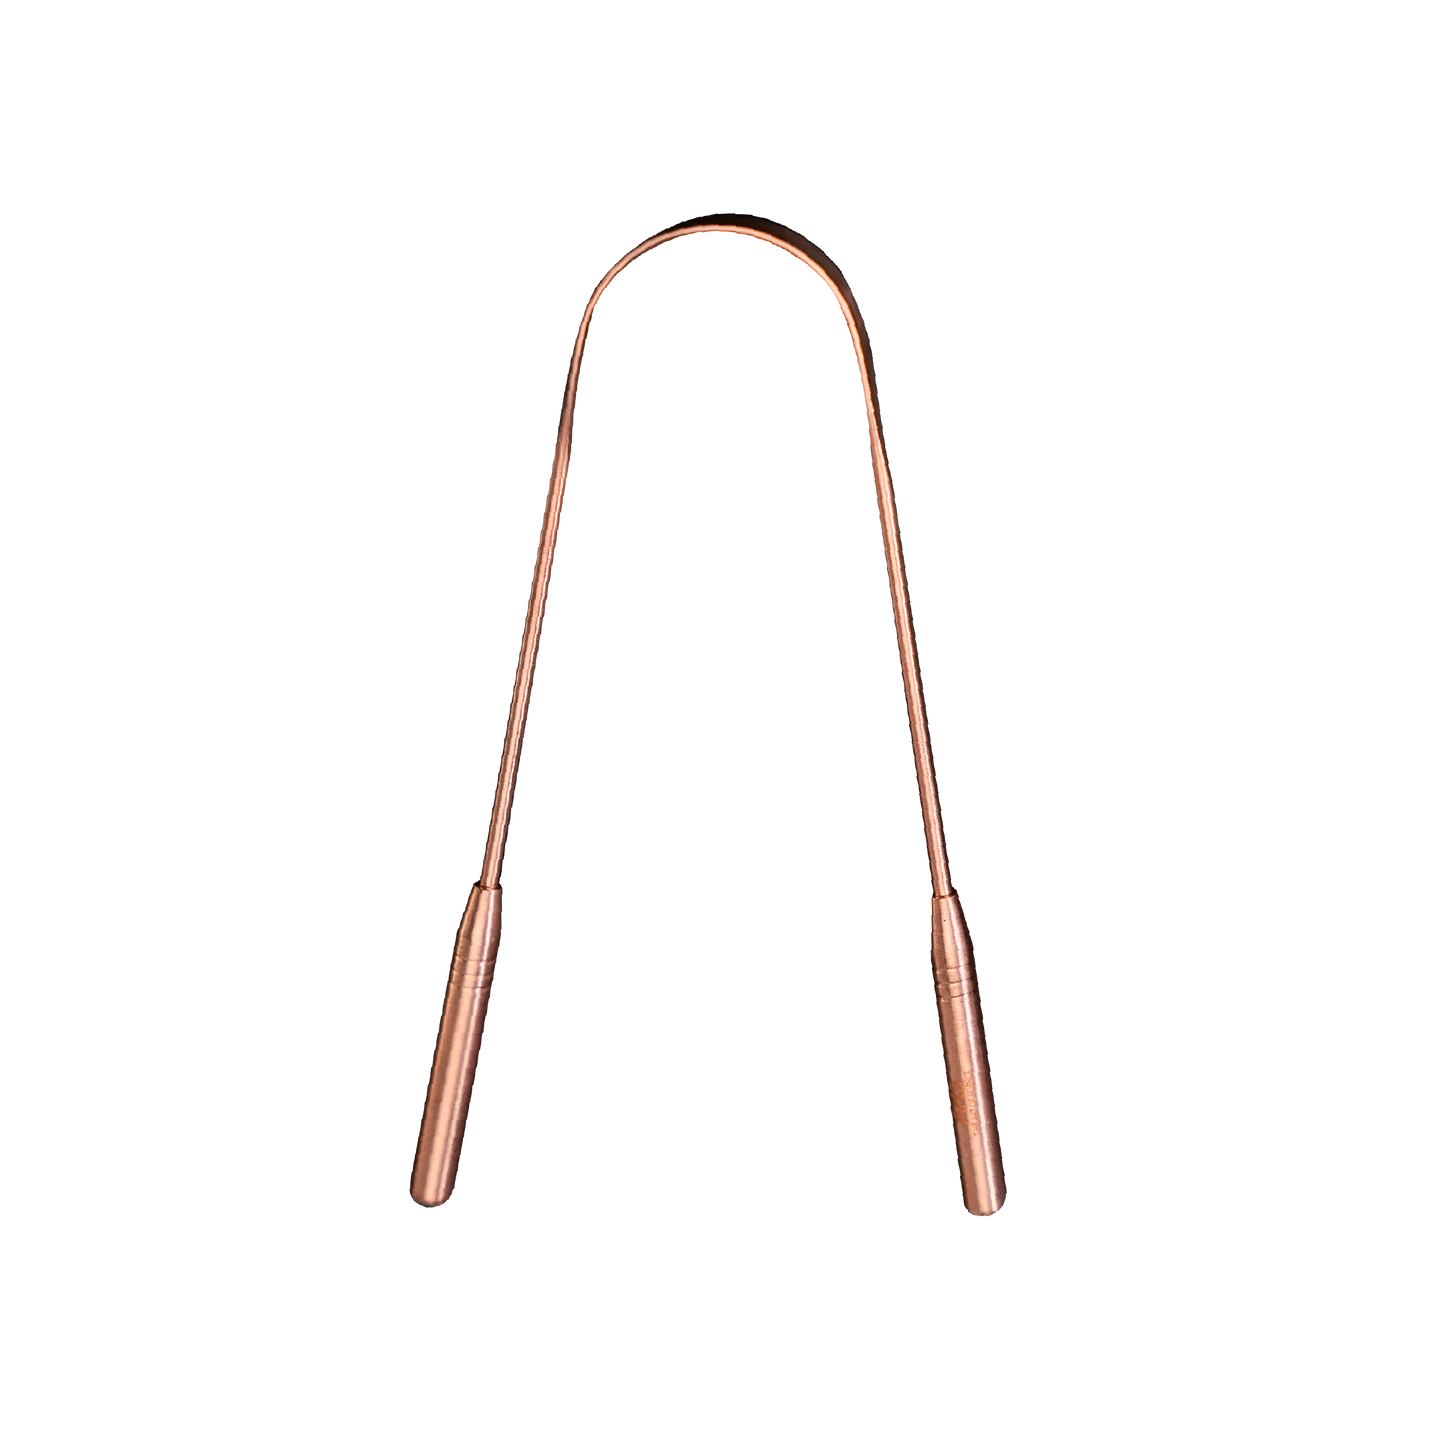 Copper Tongue Scraper